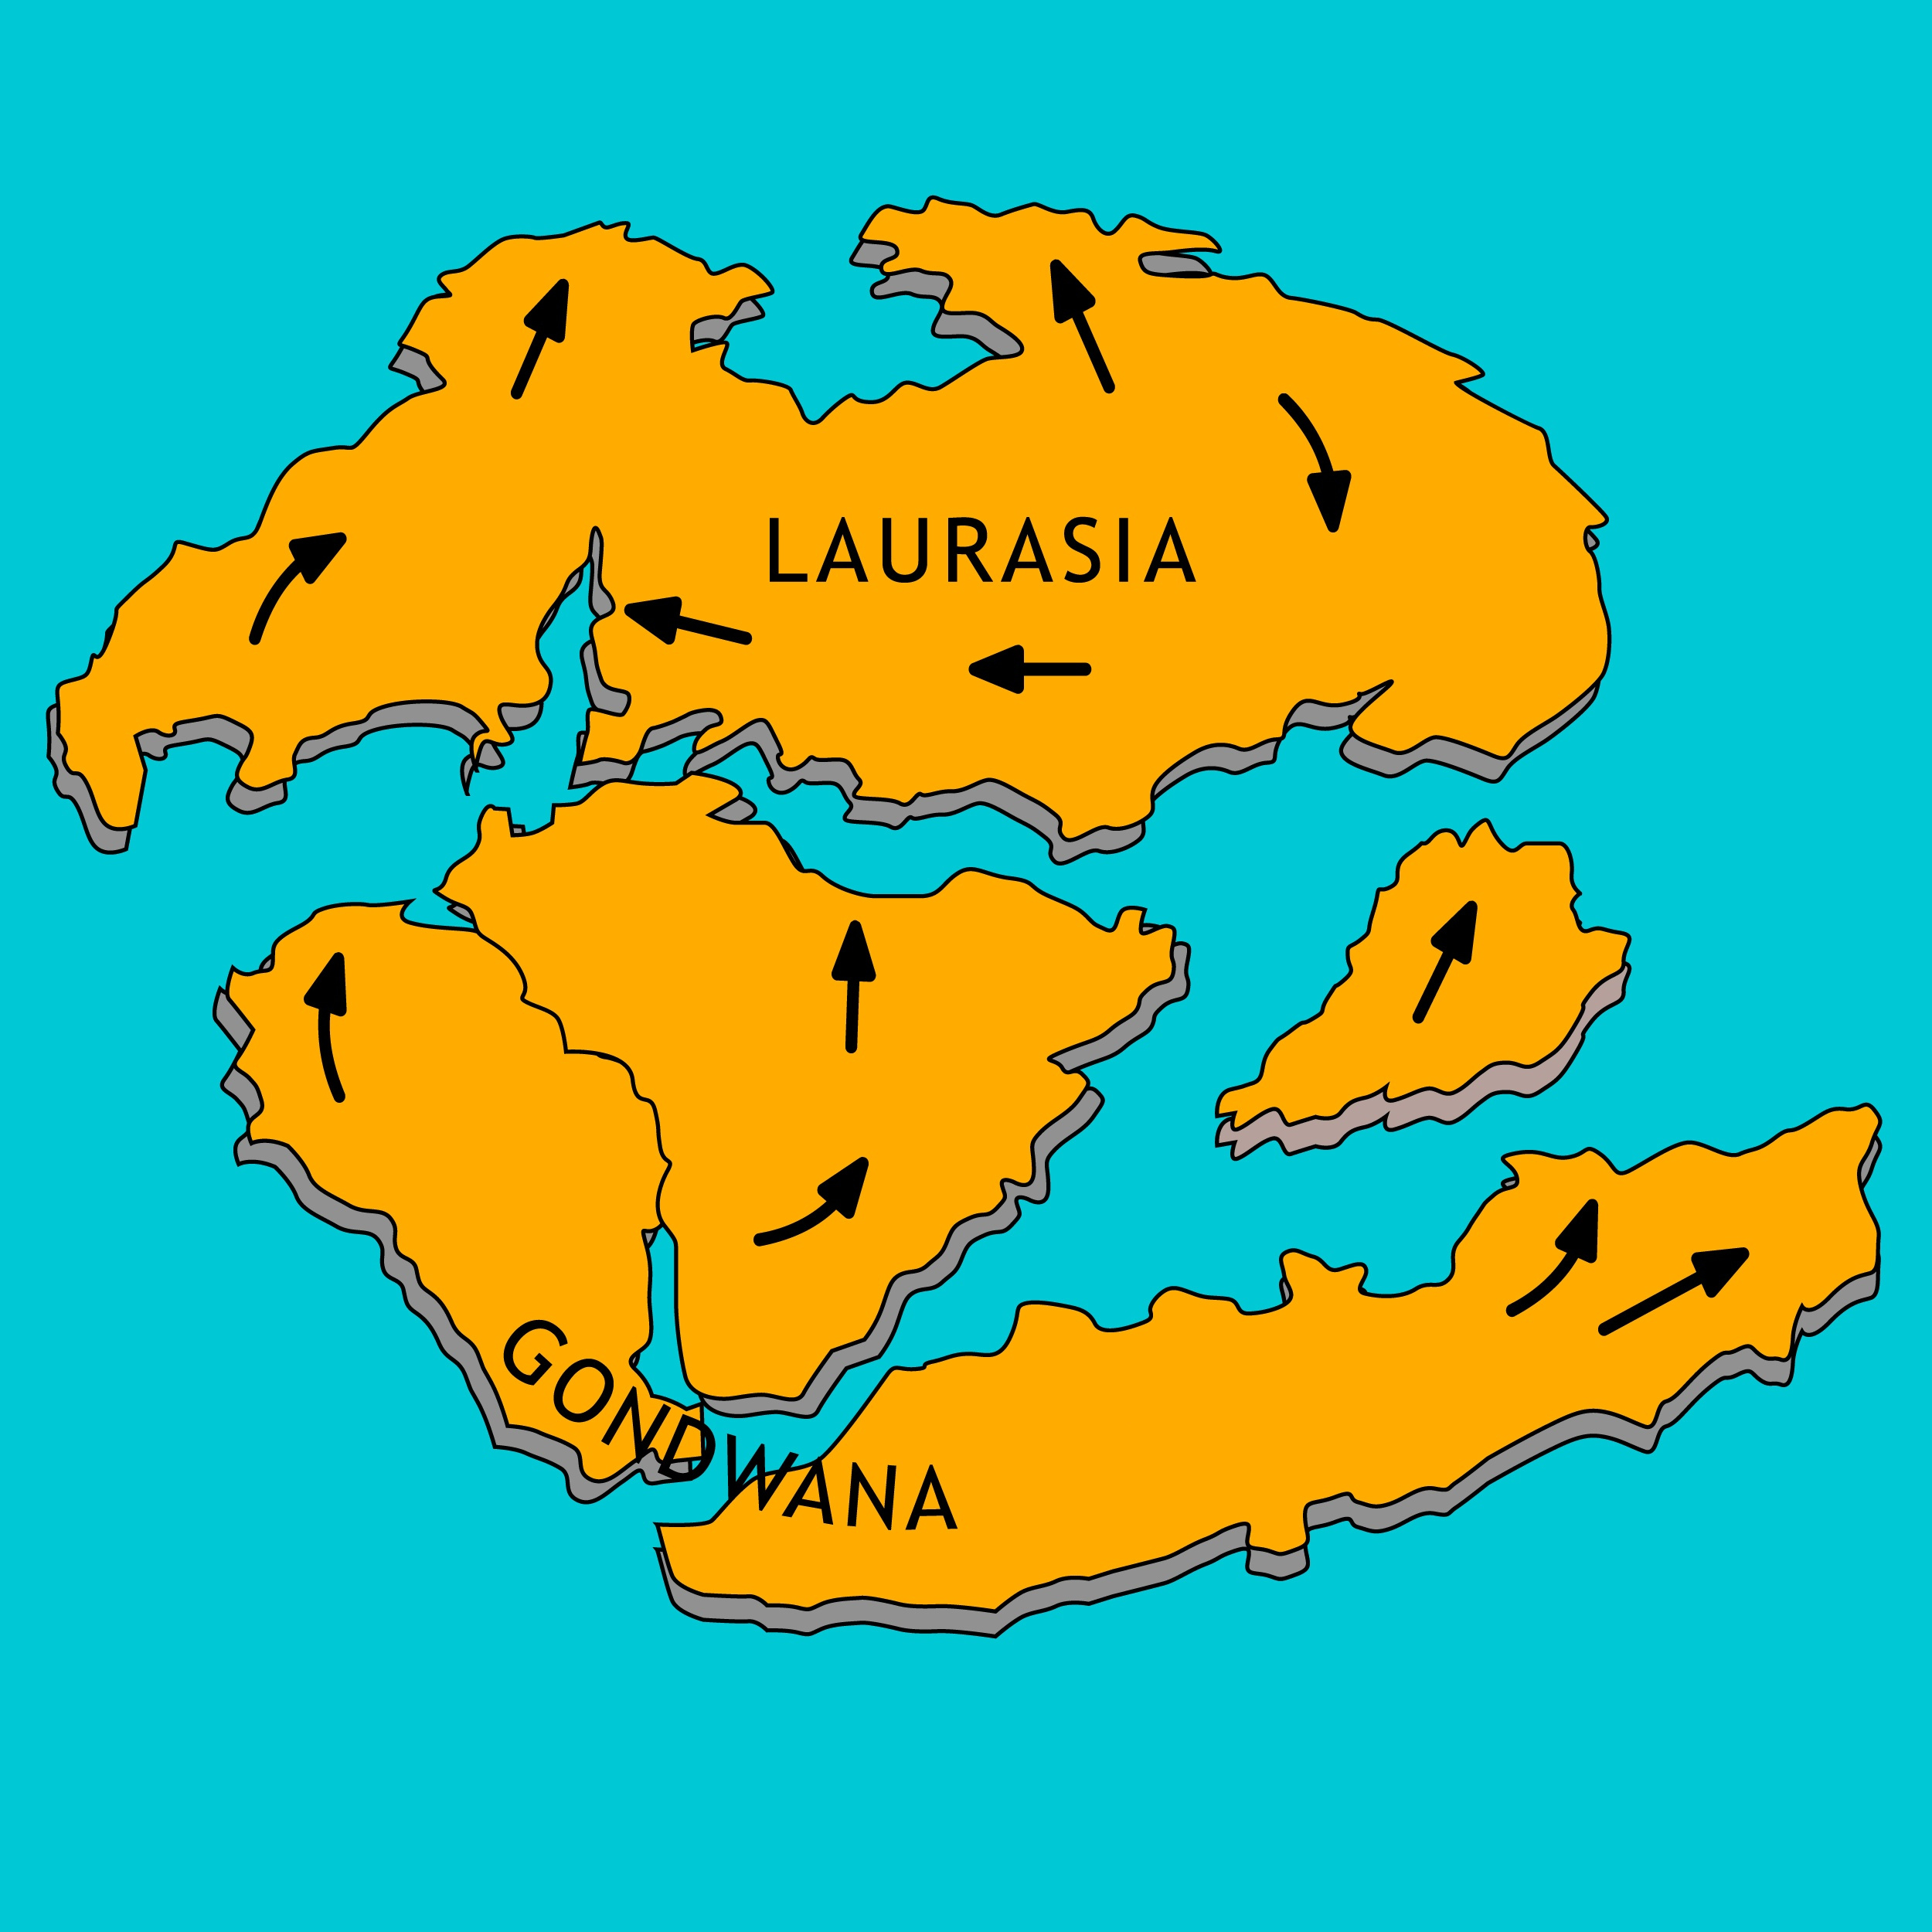 Division de Pangea formando dos continentes llamados Gondwana y Laurasia